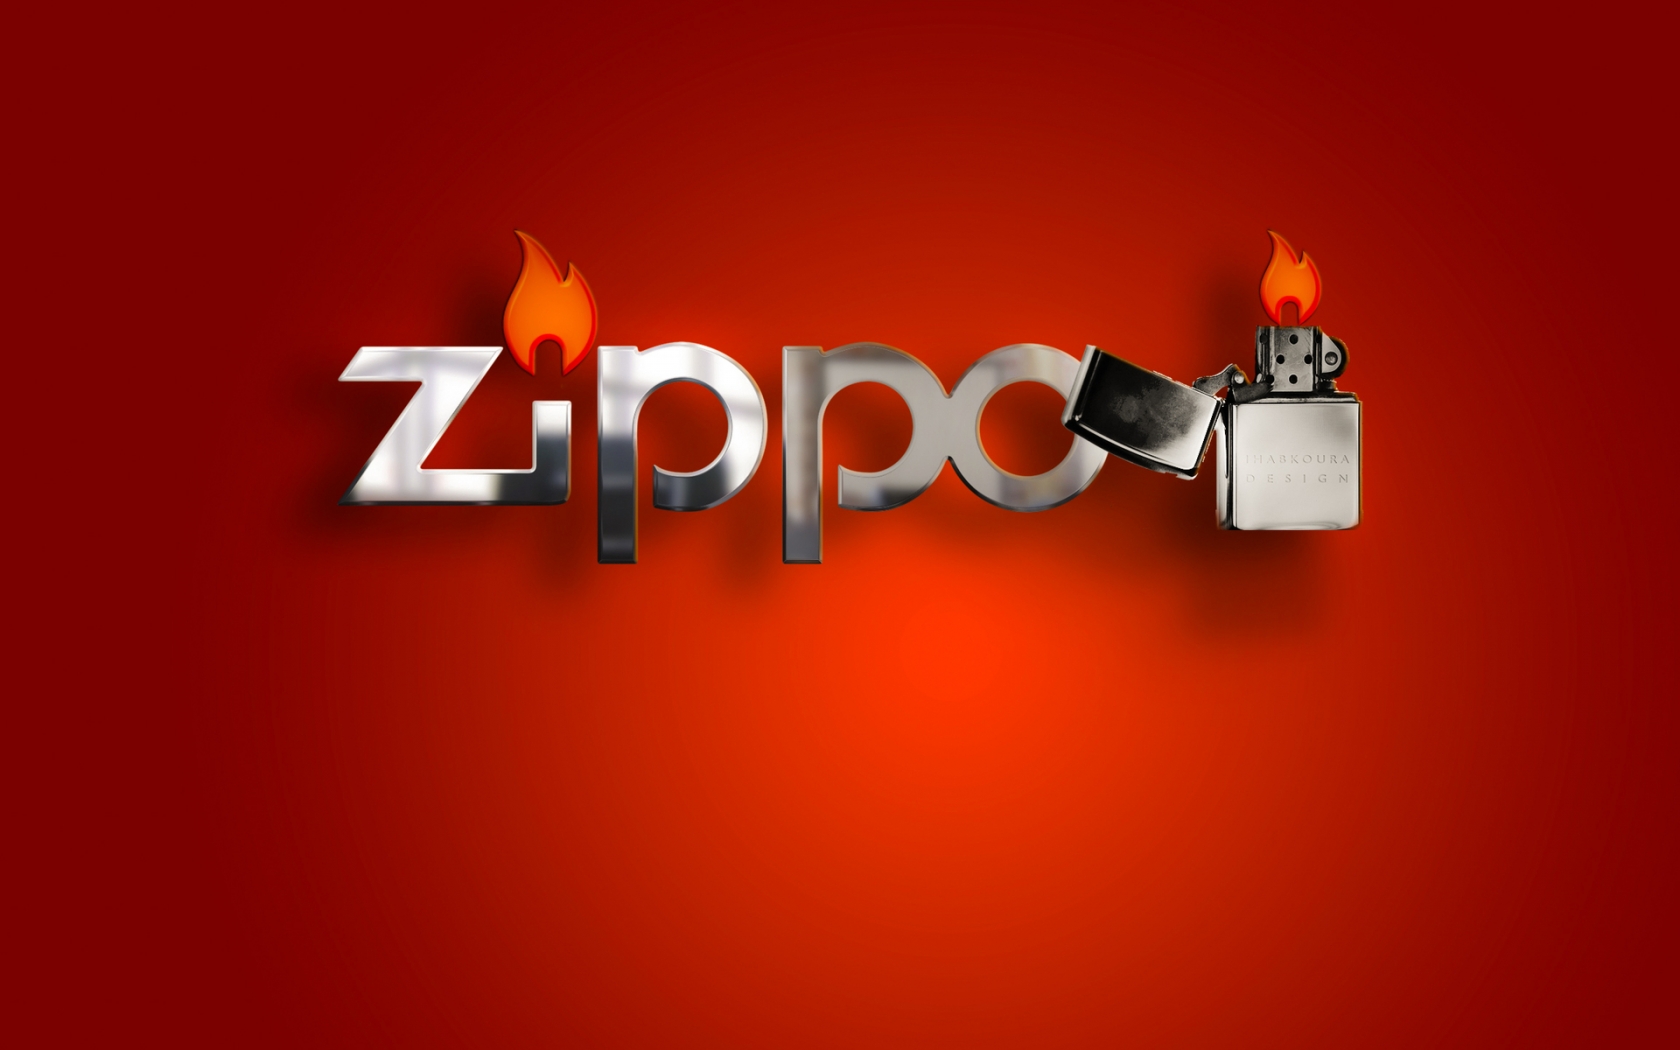 Zippo Lighter for 1680 x 1050 widescreen resolution